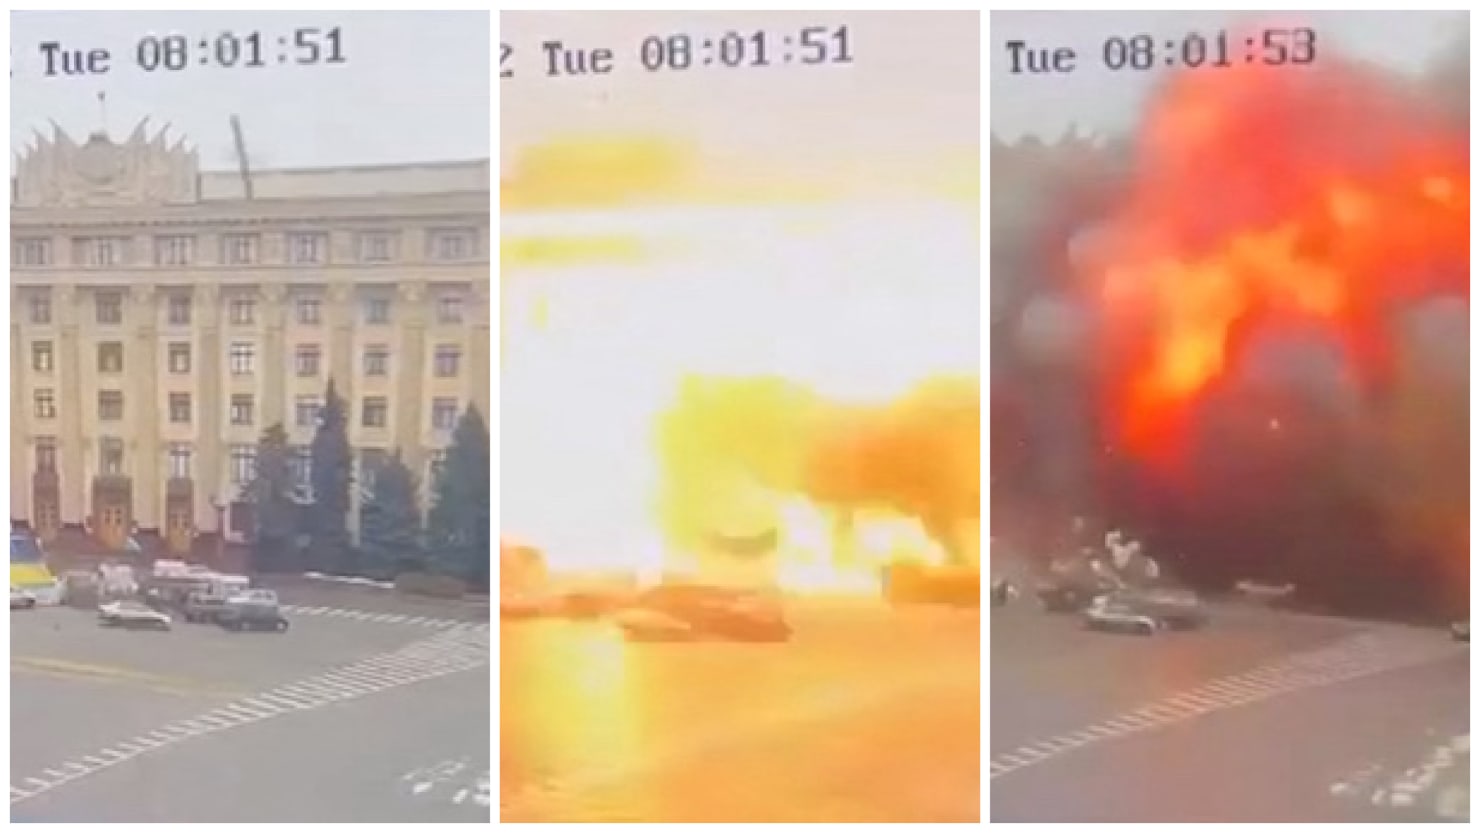 Tropas bielorrusas irrumpen en Ucrania mientras la explosión de una bomba rusa sacude el centro de la ciudad